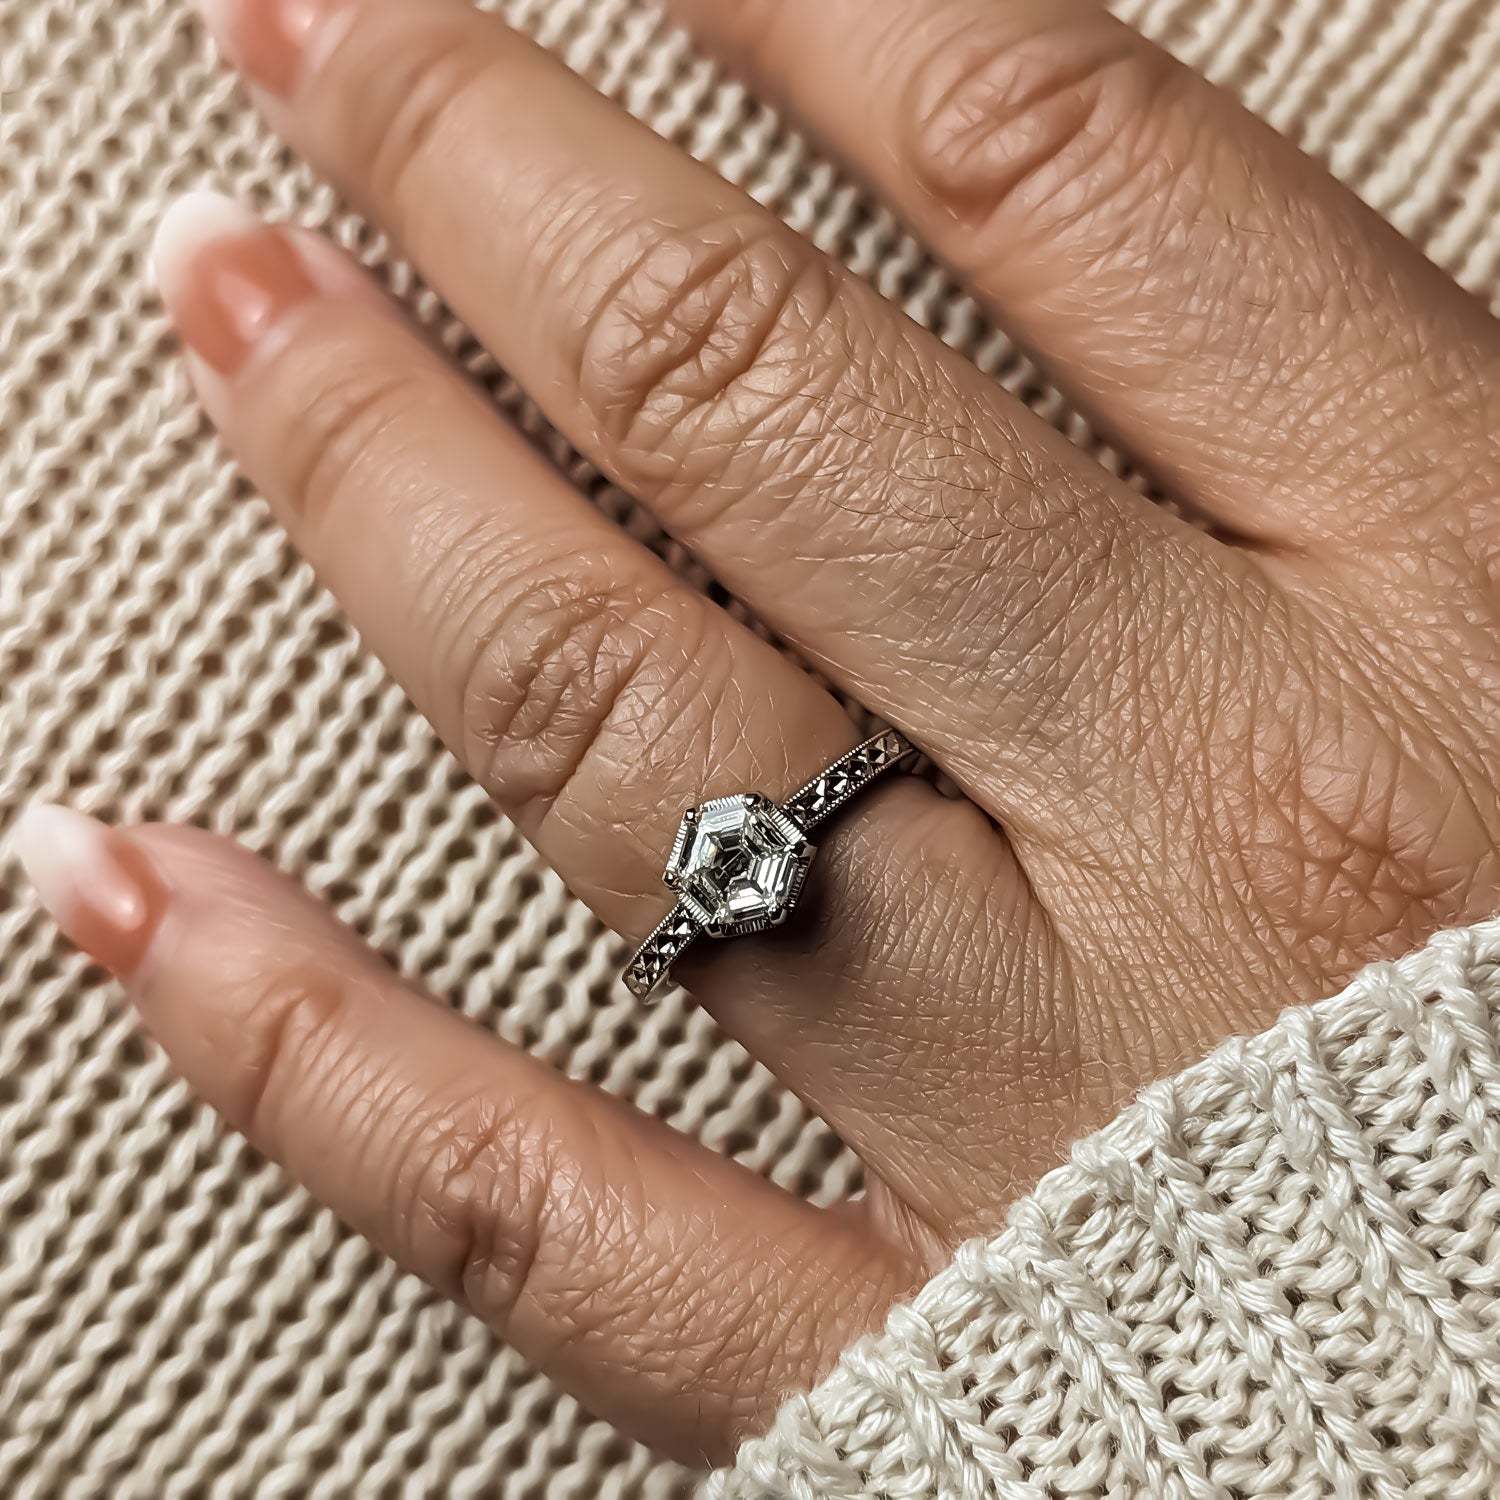 hexagonal diamond engagement ring on model